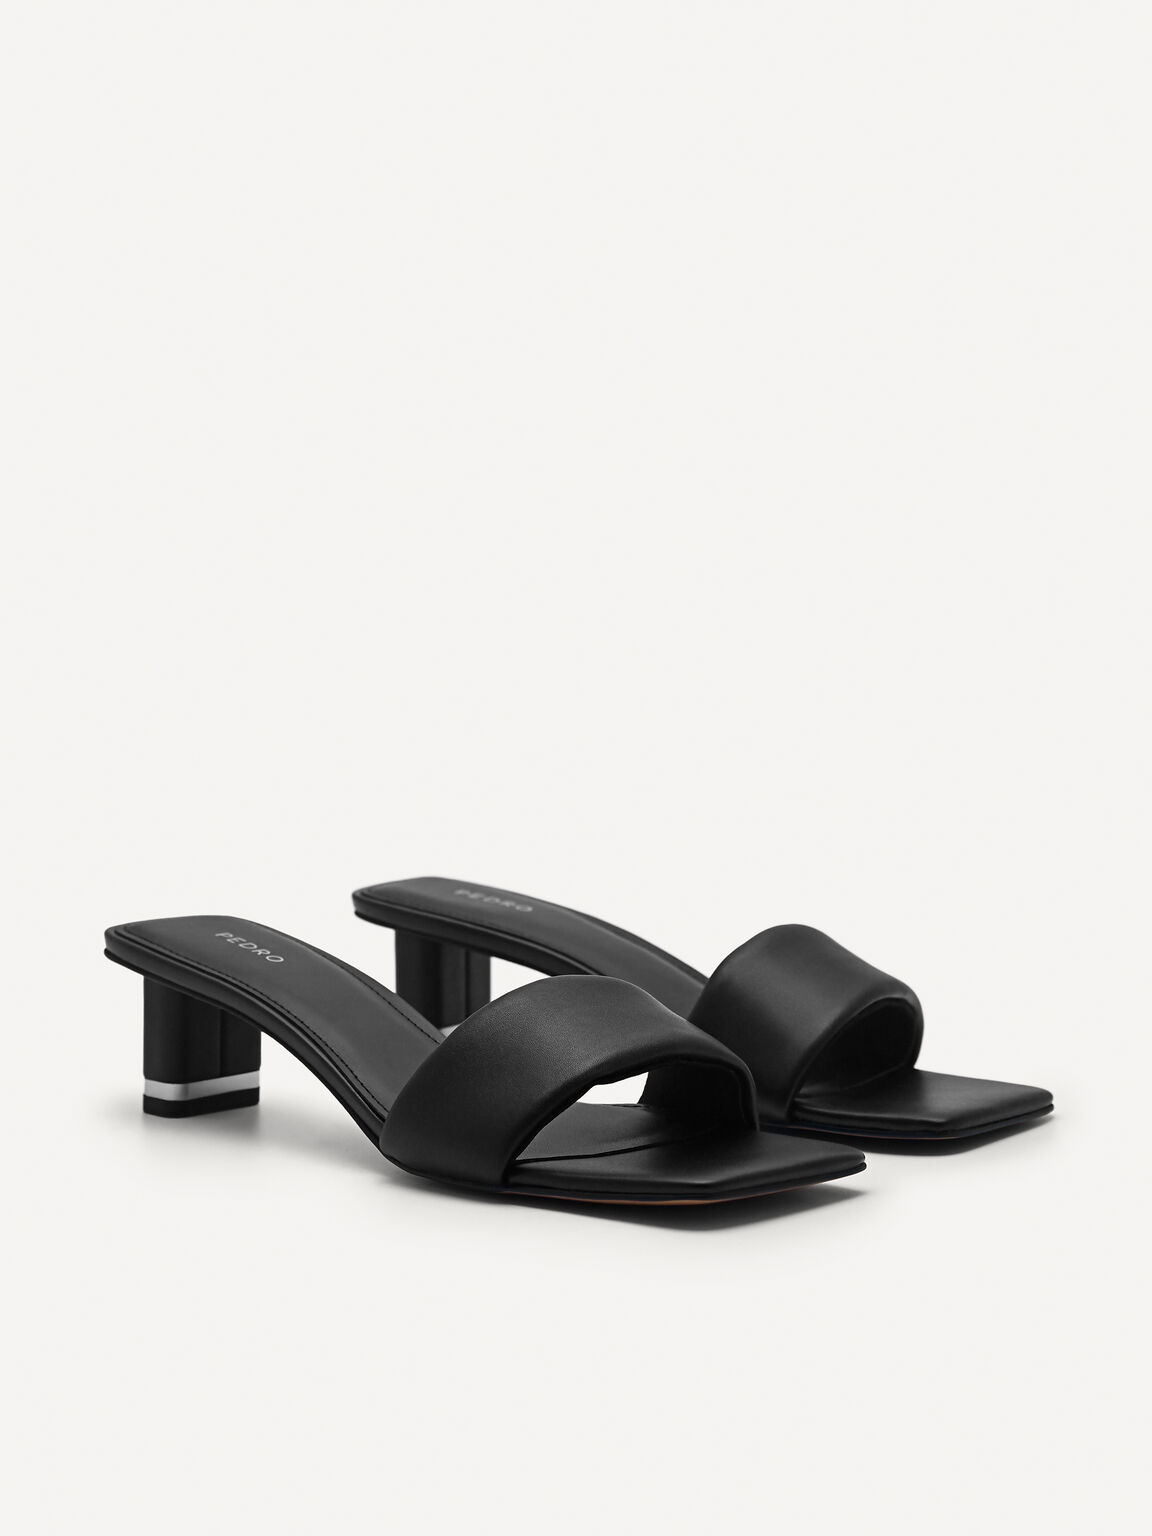 Porto Heel Sandals, Black, hi-res